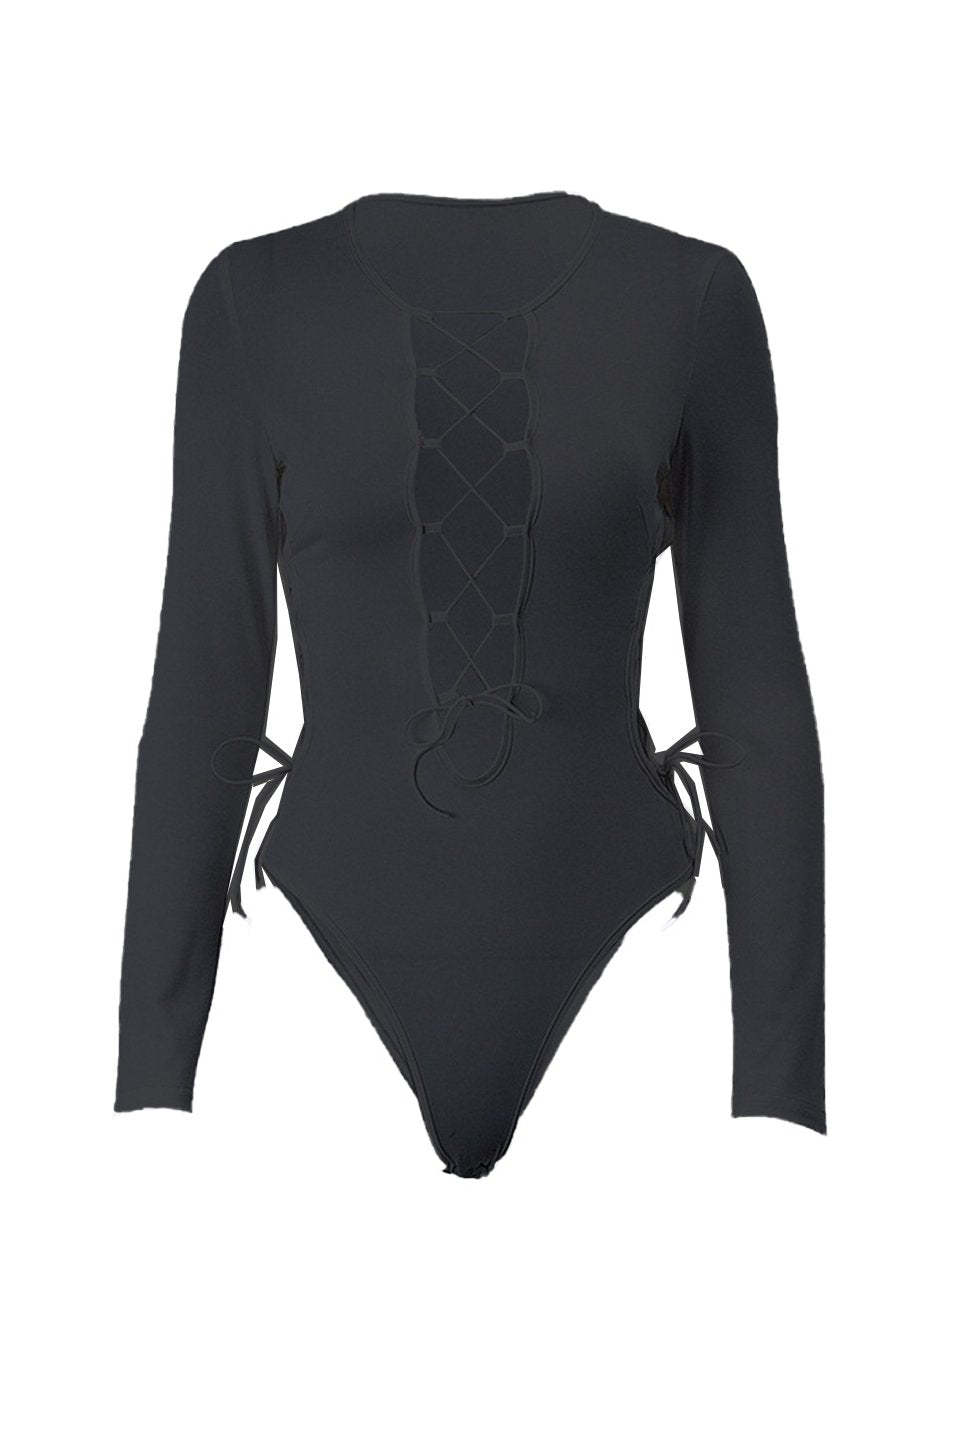 -Yetta V-neck Lace Up Bodysuit-SJ00211061844-Black-S - Sunfere